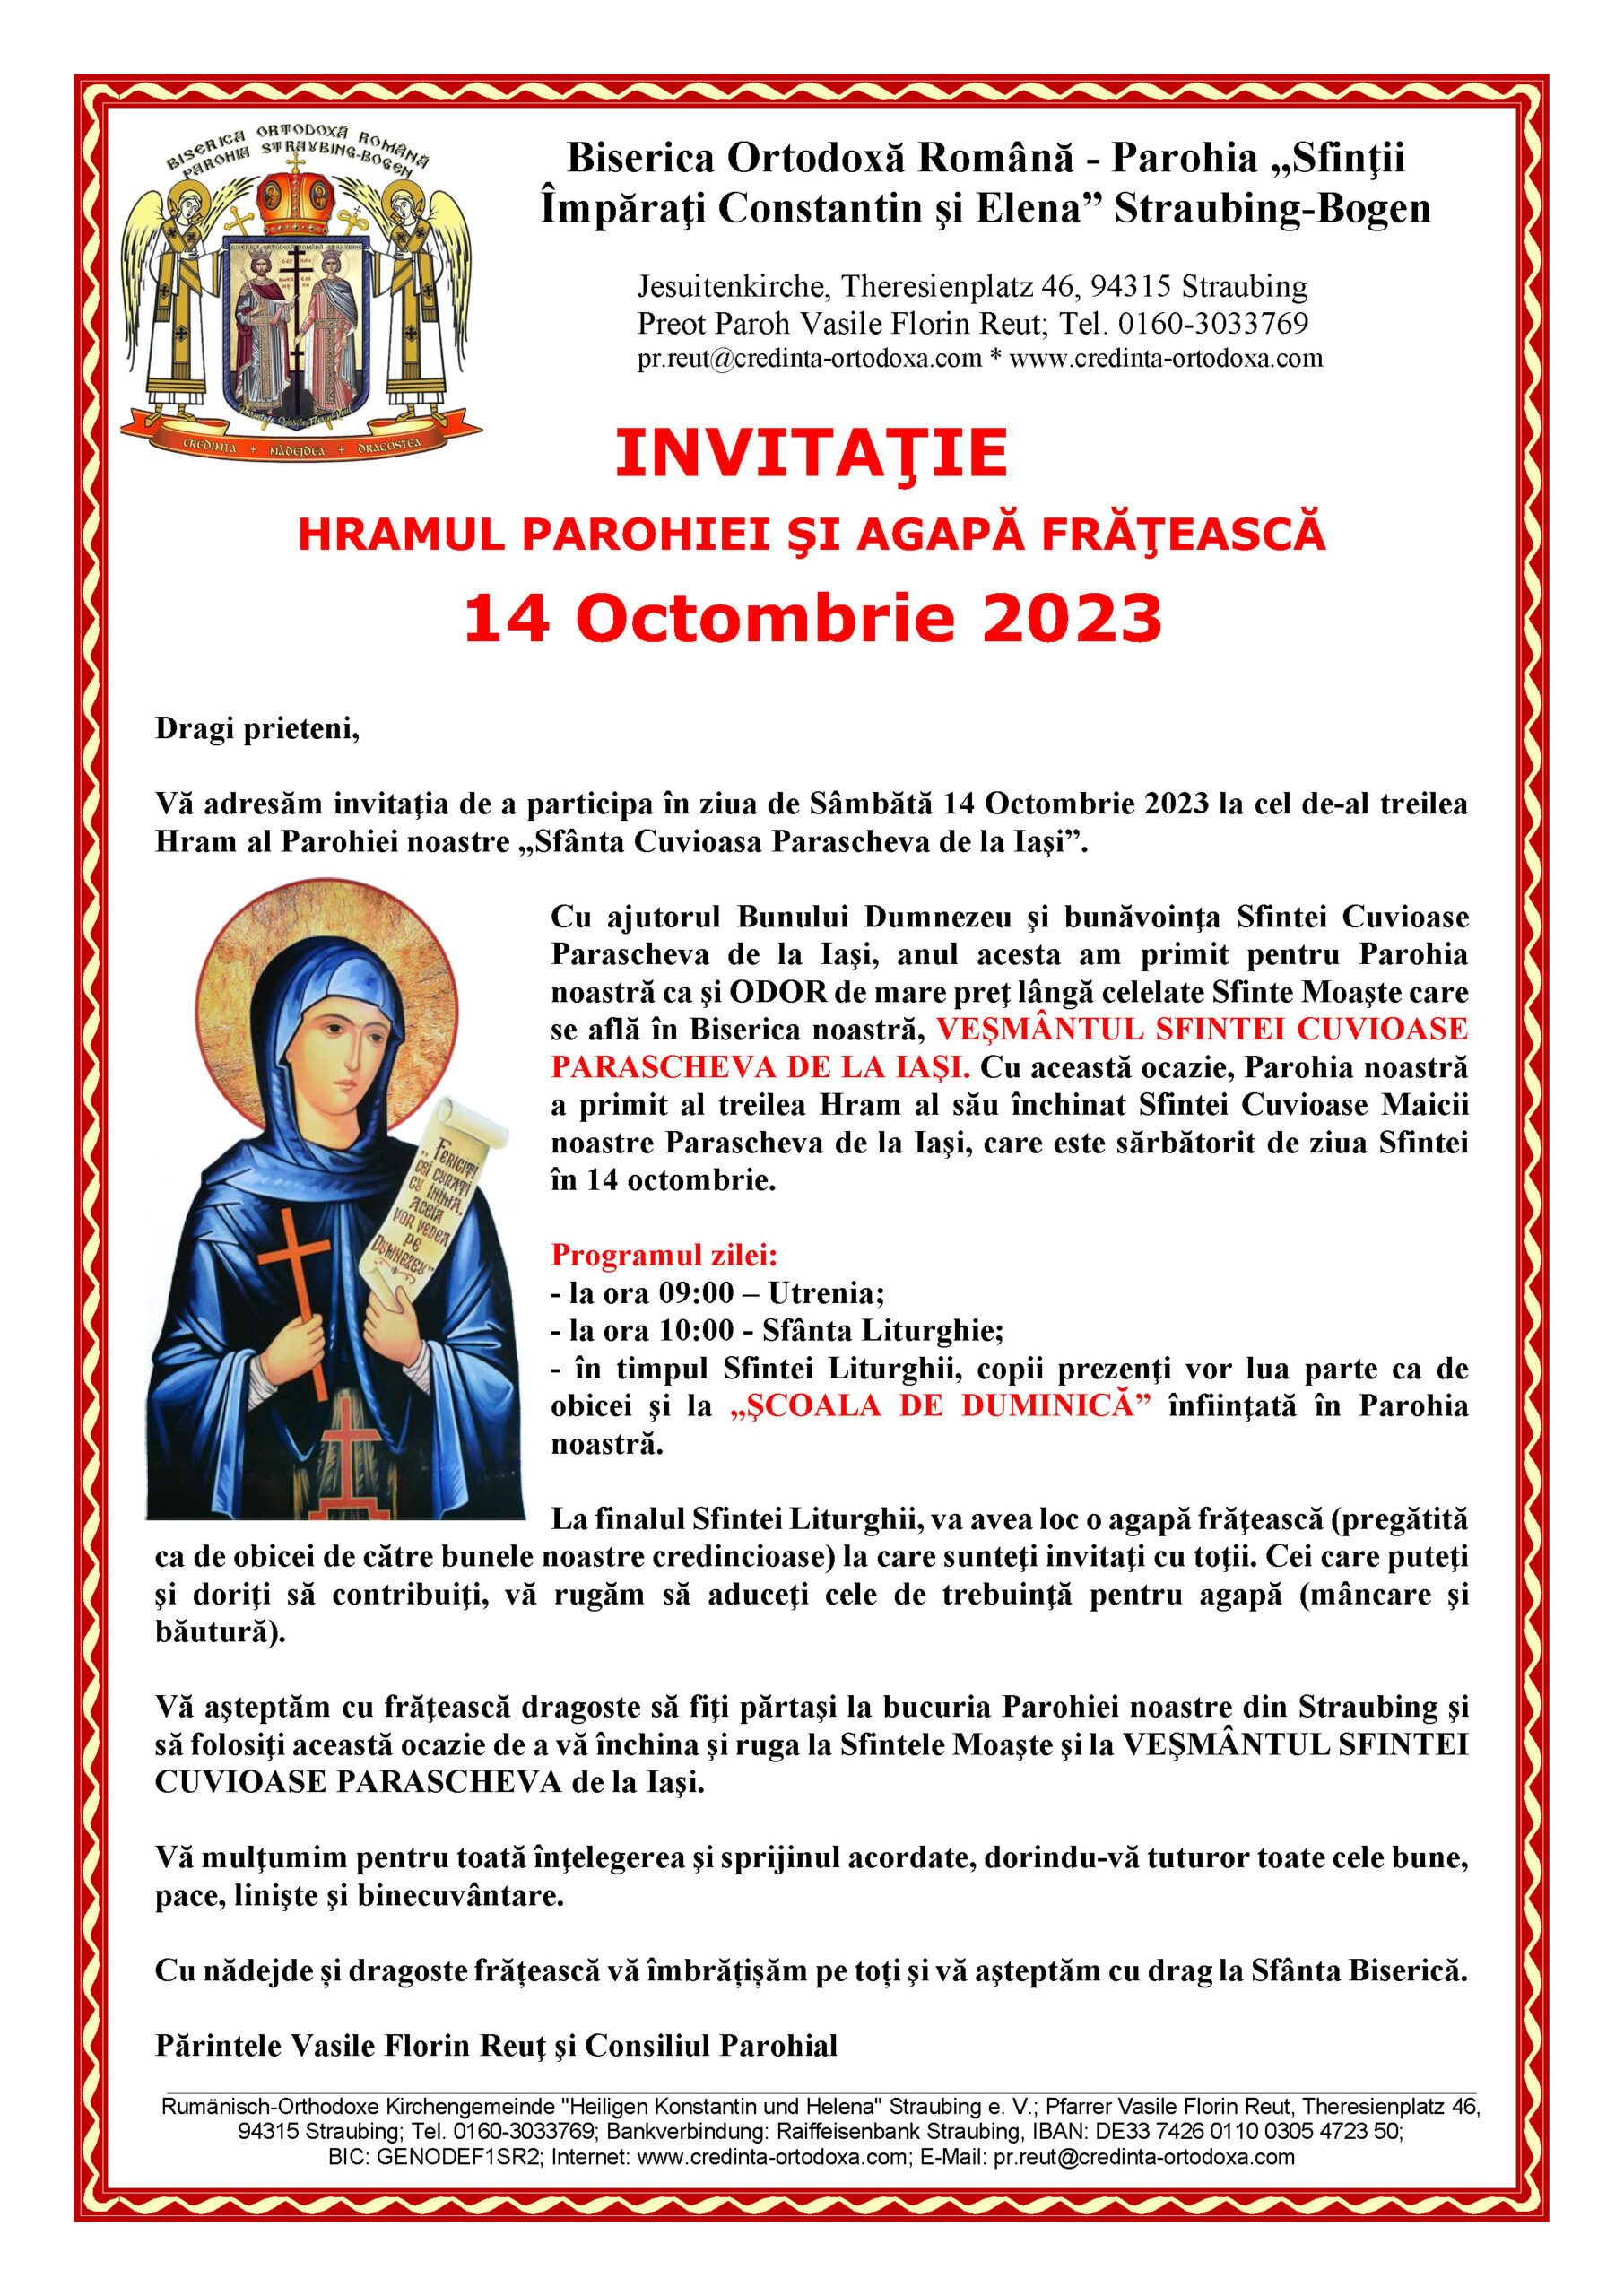 INVITAŢIE la HRAMUL Parohiei Straubing "SFÂNTA CUVIOASĂ PARASCHEVA DE LA IAŞI" - 14.10.2023